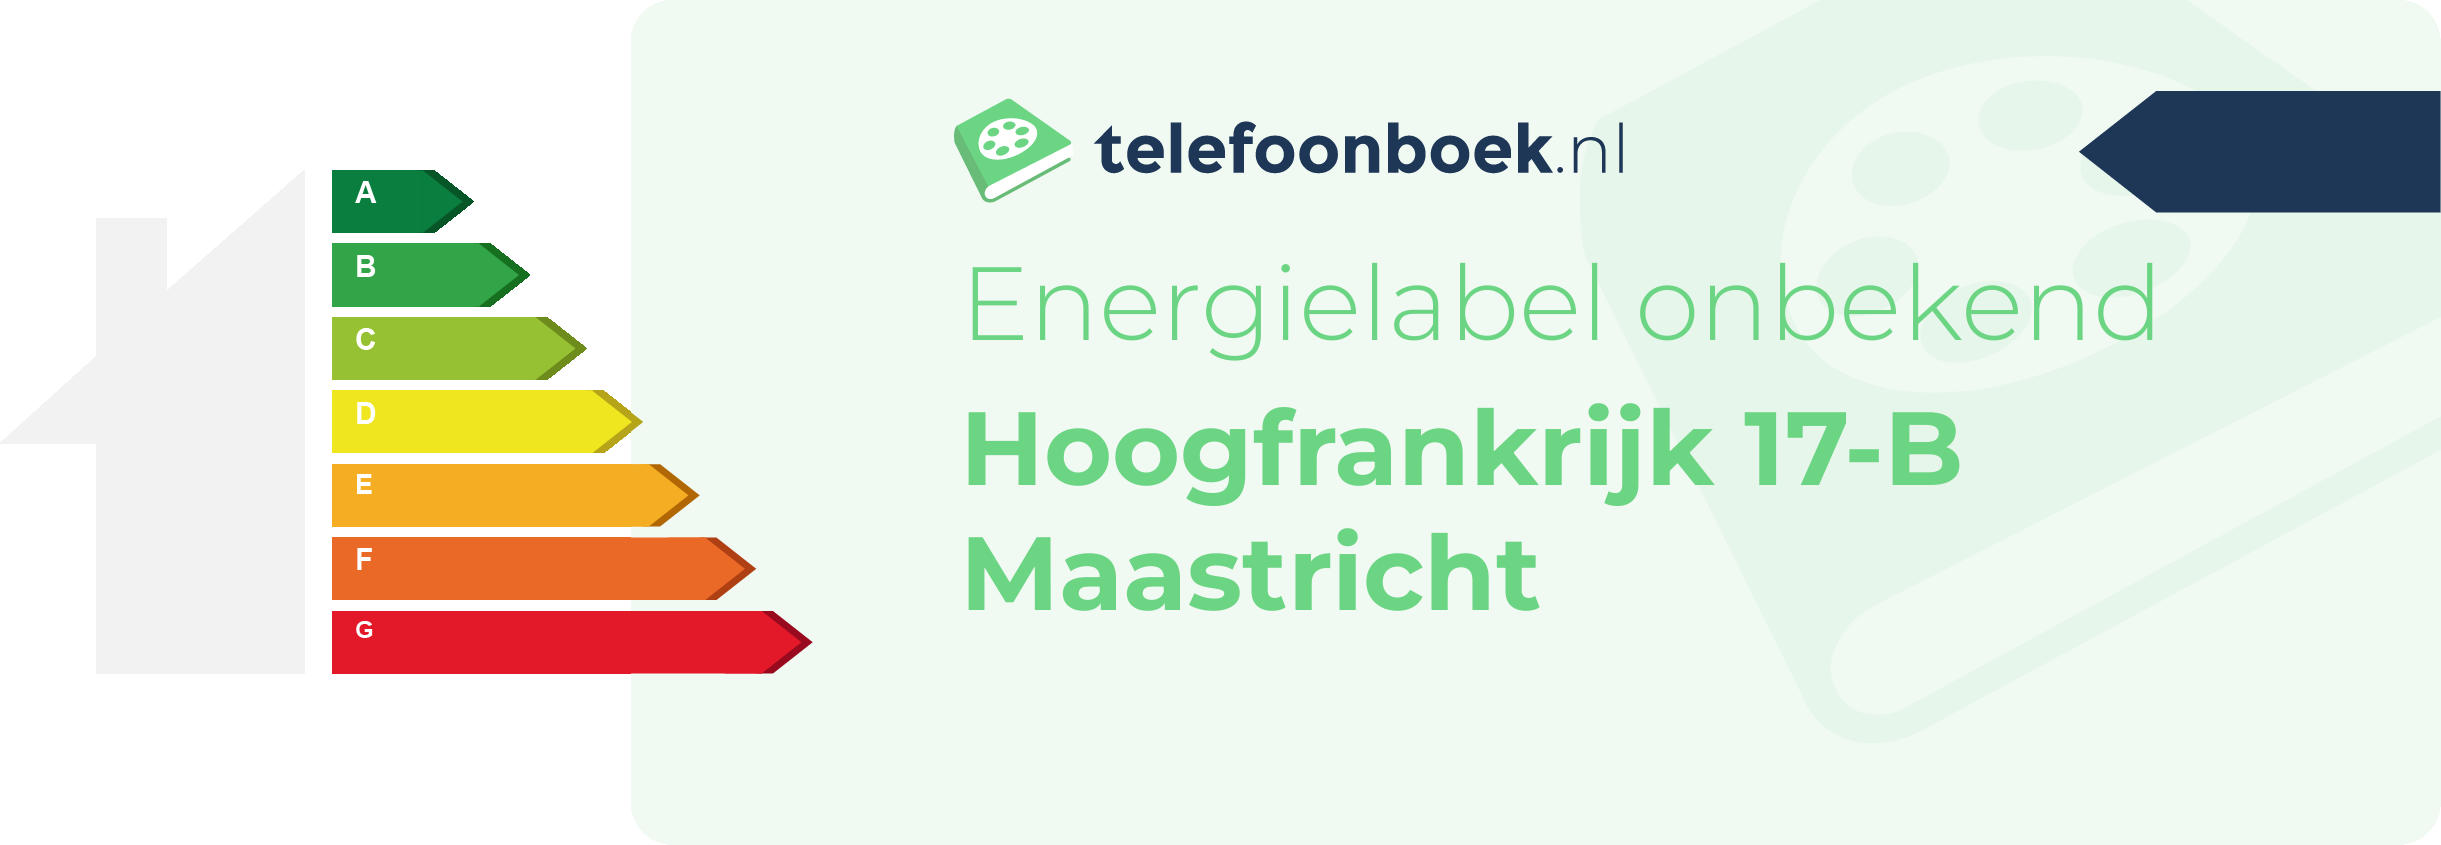 Energielabel Hoogfrankrijk 17-B Maastricht